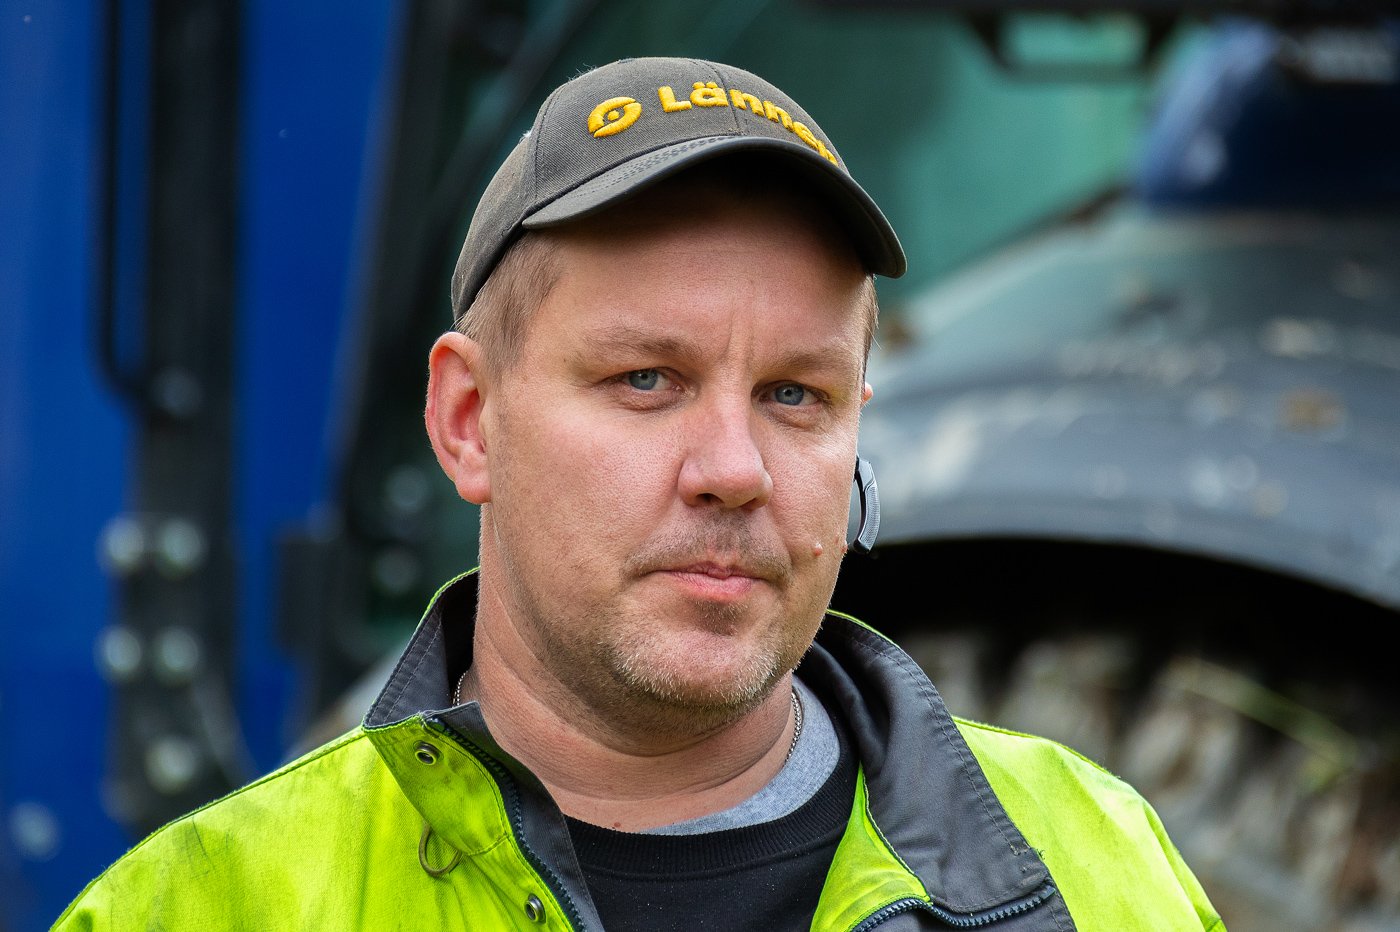 Energiakaivuu Oy:n Janne Järvinen on toiminut Lännen monitoimikoneiden luottokuljettajana